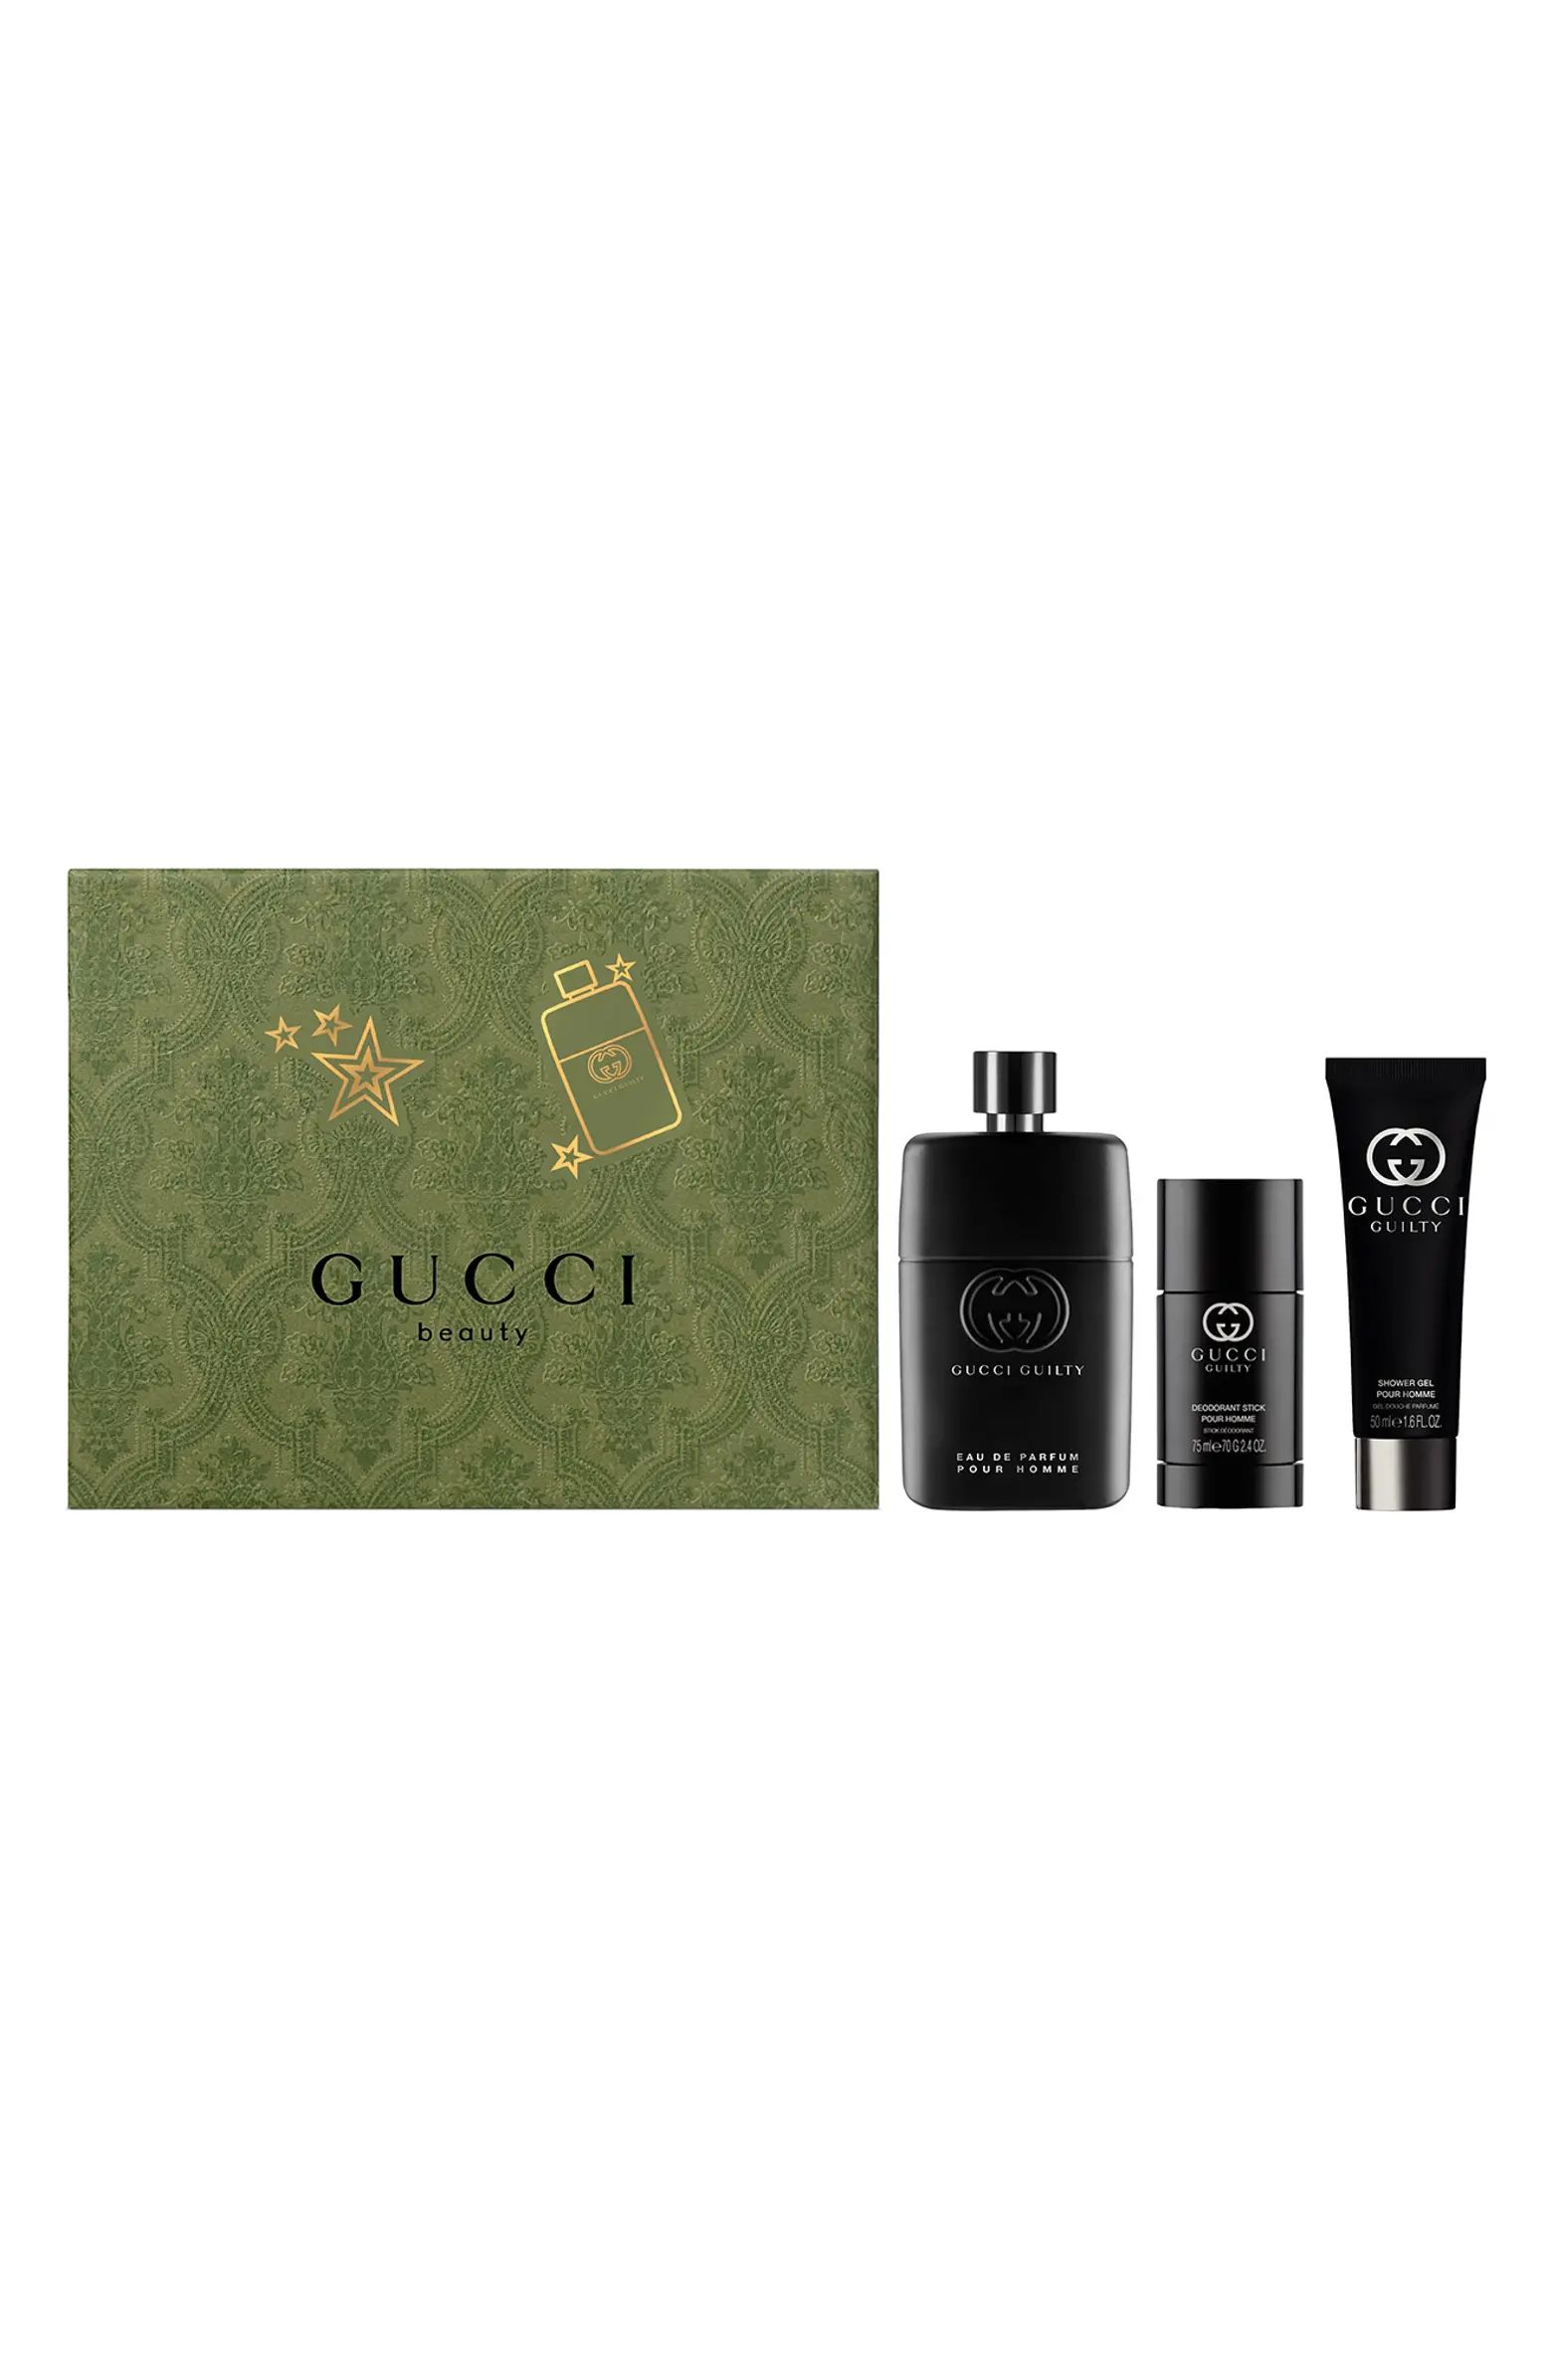 Guilty Pour Homme Eau de Parfum Gift Set $196 Value | Nordstrom